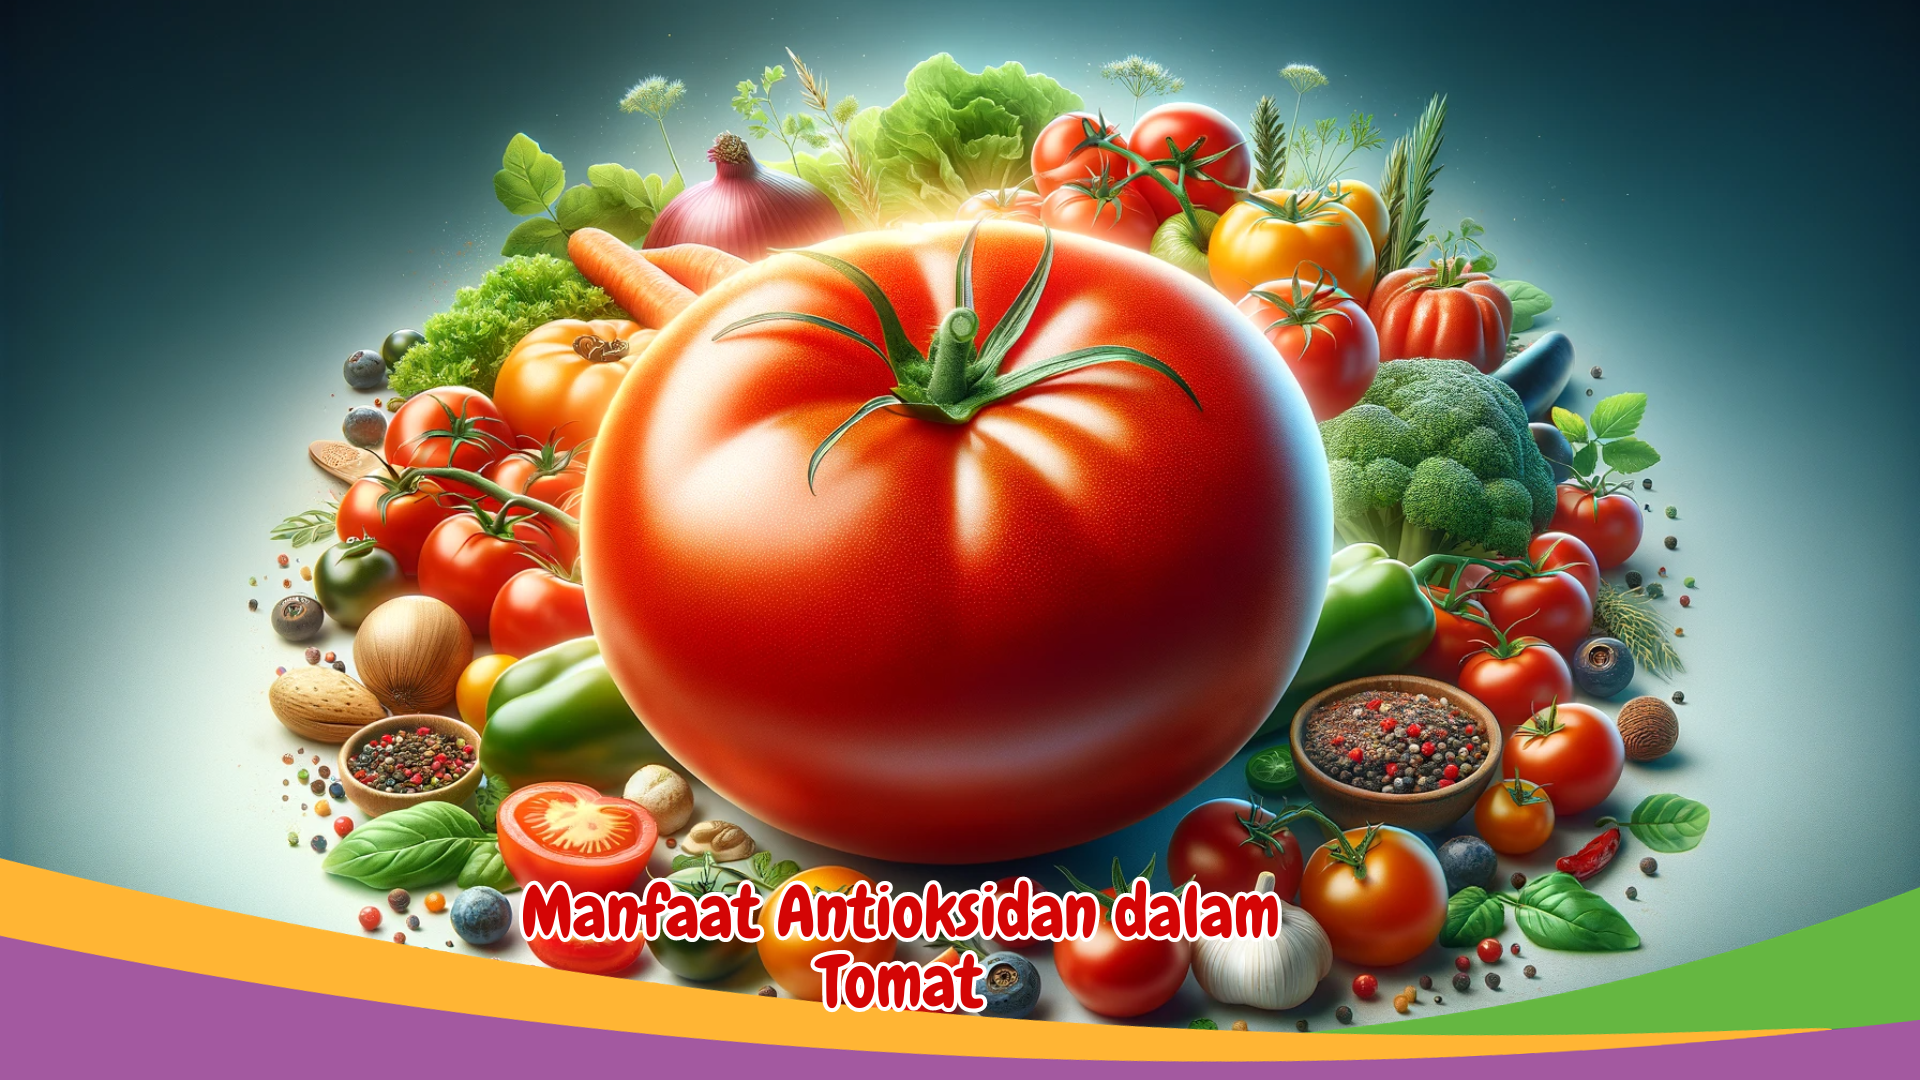 Manfaat Antioksidan dalam Tomat